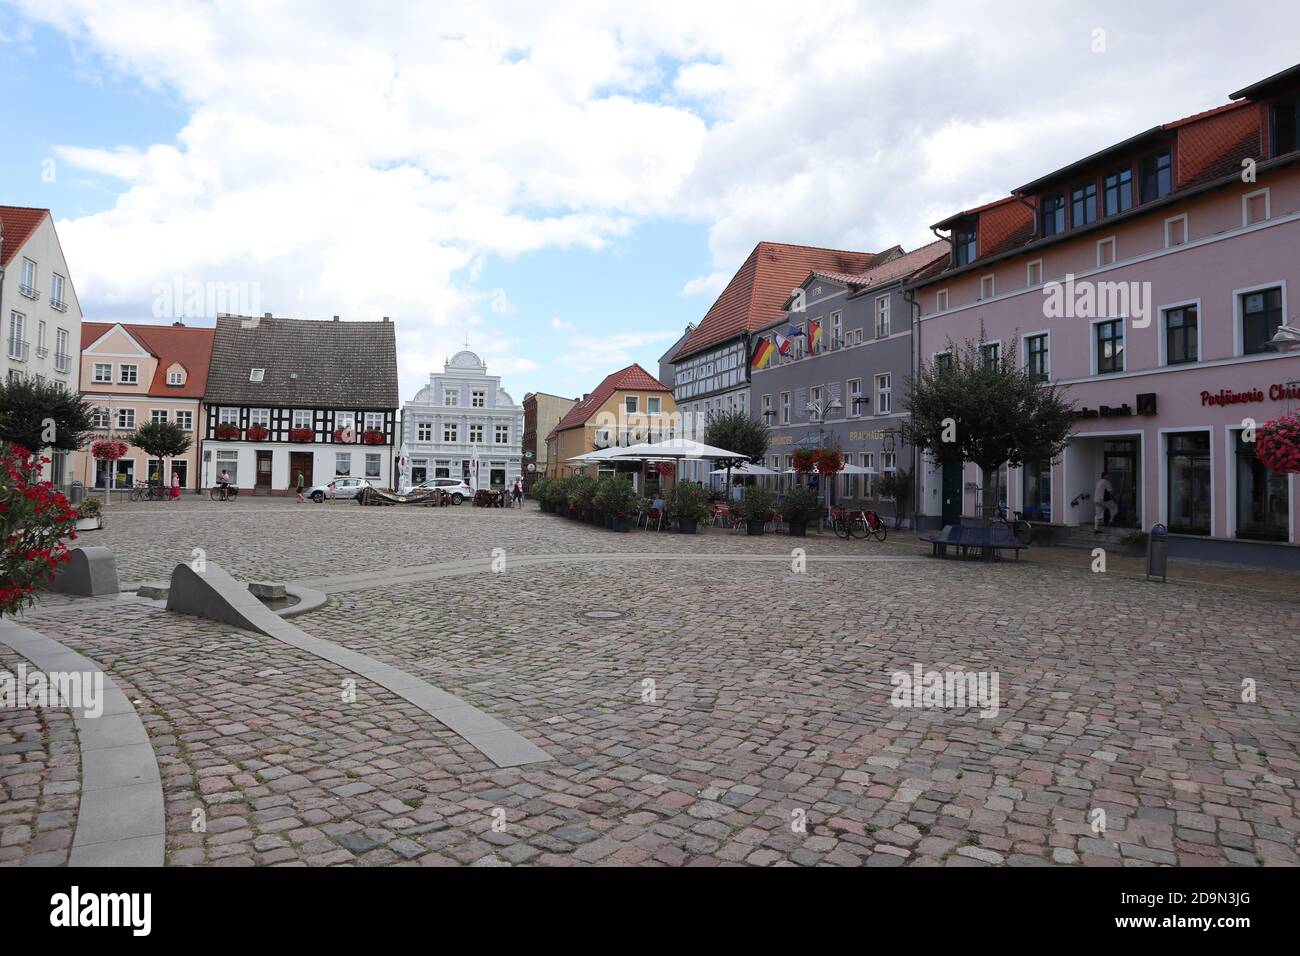 Ueckermünde, Mecklenburg-Vorpommern - August 23 2020: Zentraler Marktplatz mit traditionellen Häusern im Norden Deutschlands Stockfoto